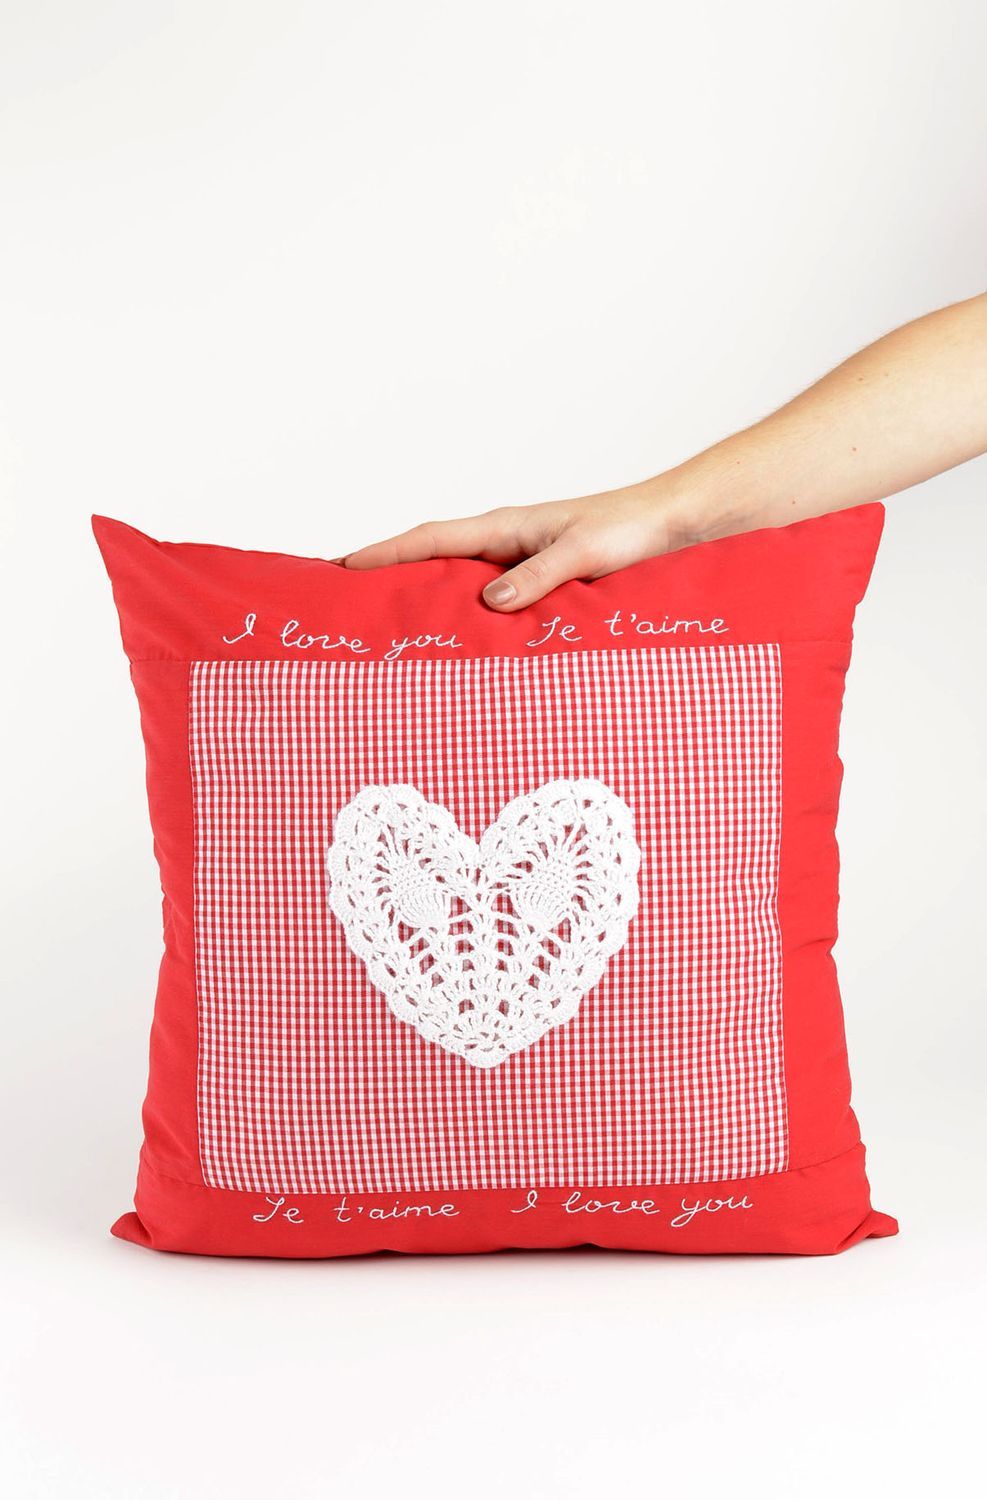 Подушка для сна подарок ручной работы красная креативный подарок любимому фото 4